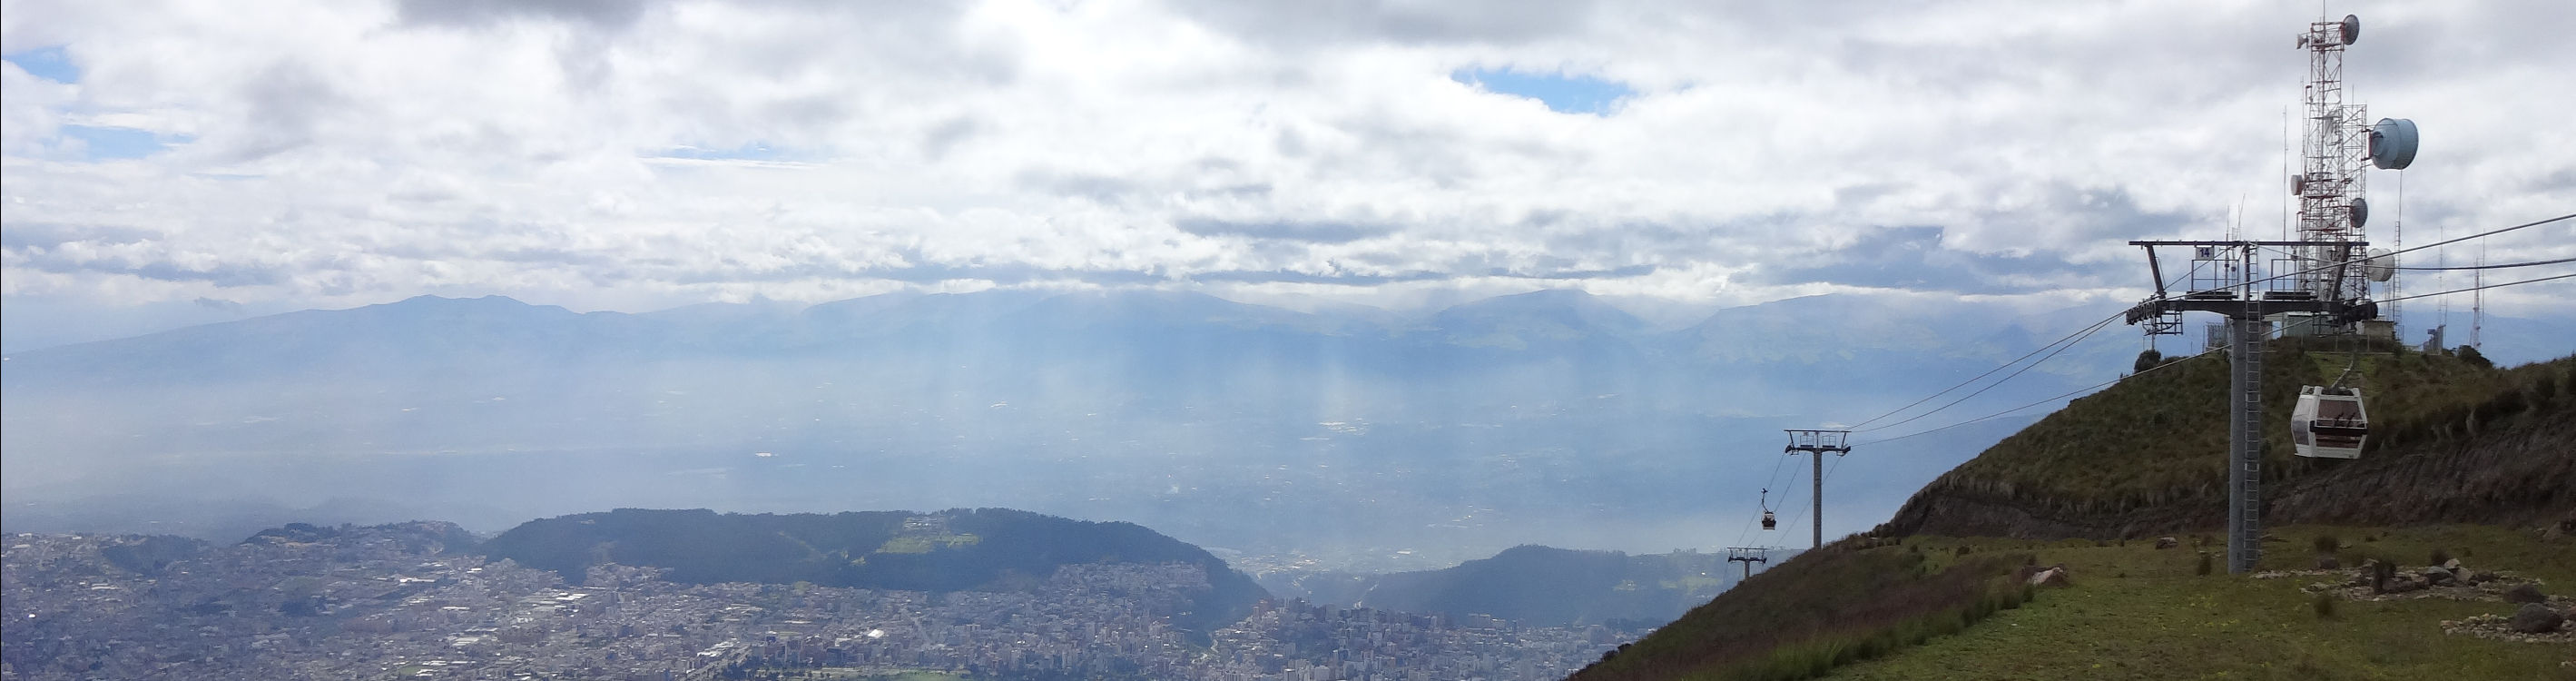 Blick auf die Straßen von Quito.